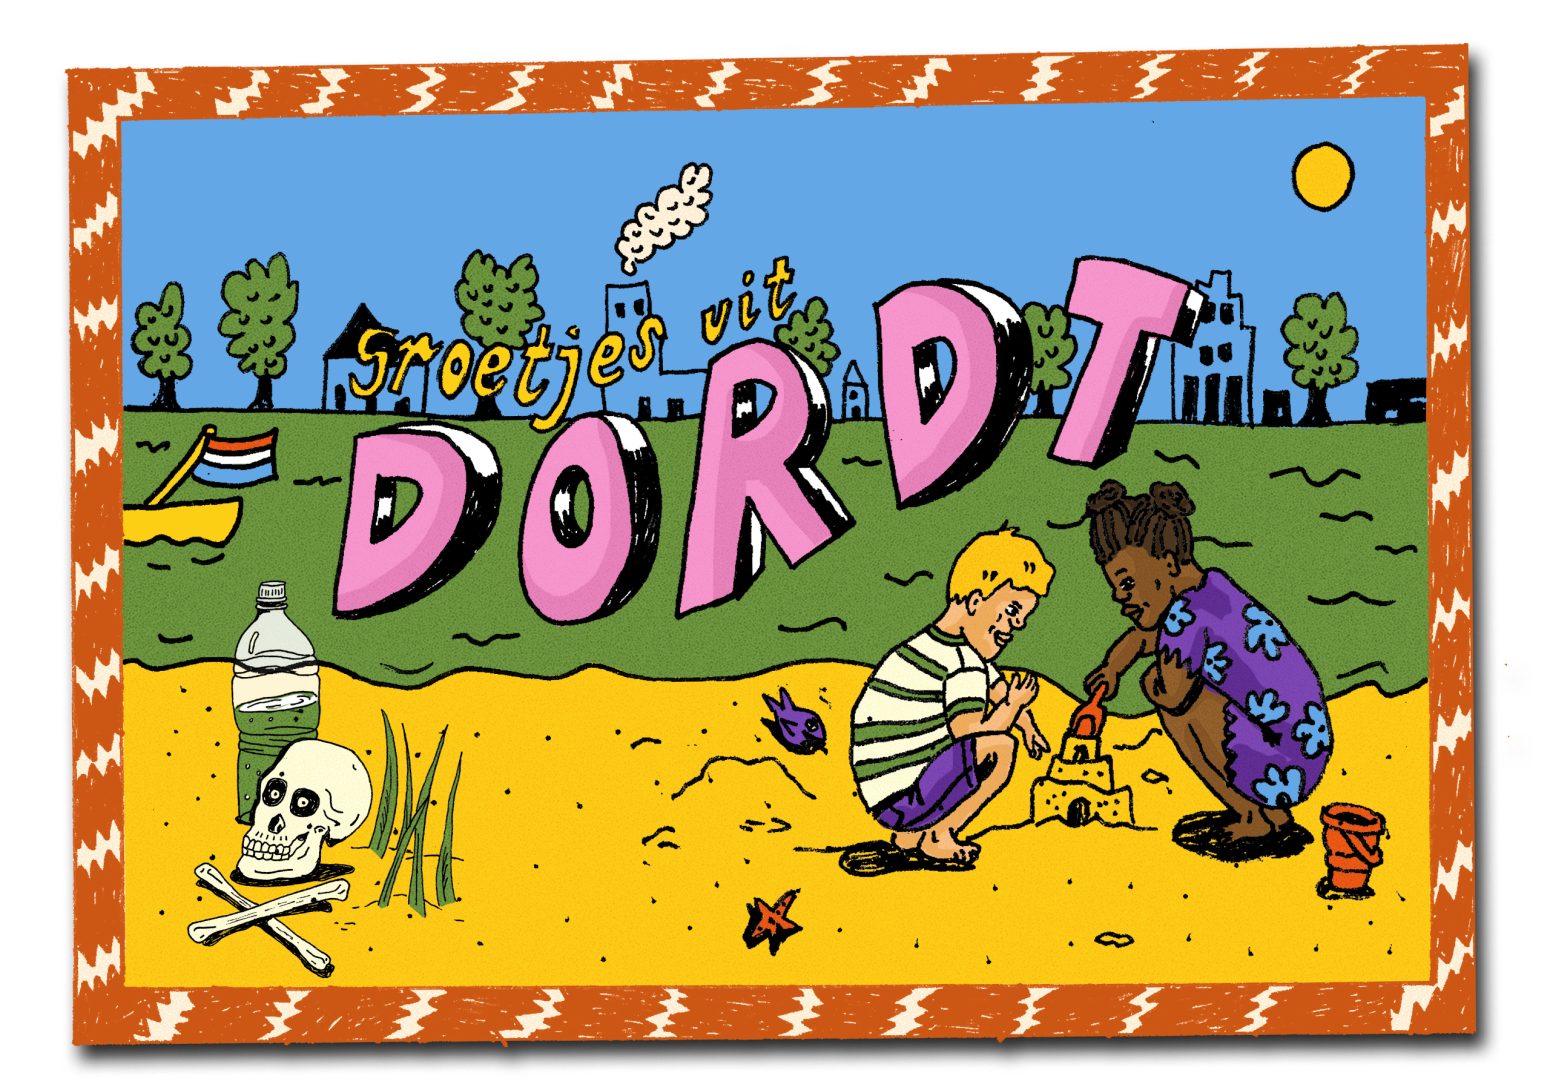 illustratie in de stijl van een ansichtkaart waar groot 'Dordt' op staat, een jongen en meisje spelen op een strand waar ook een doodskop ligt. Op de achtergrond een groene rivier.